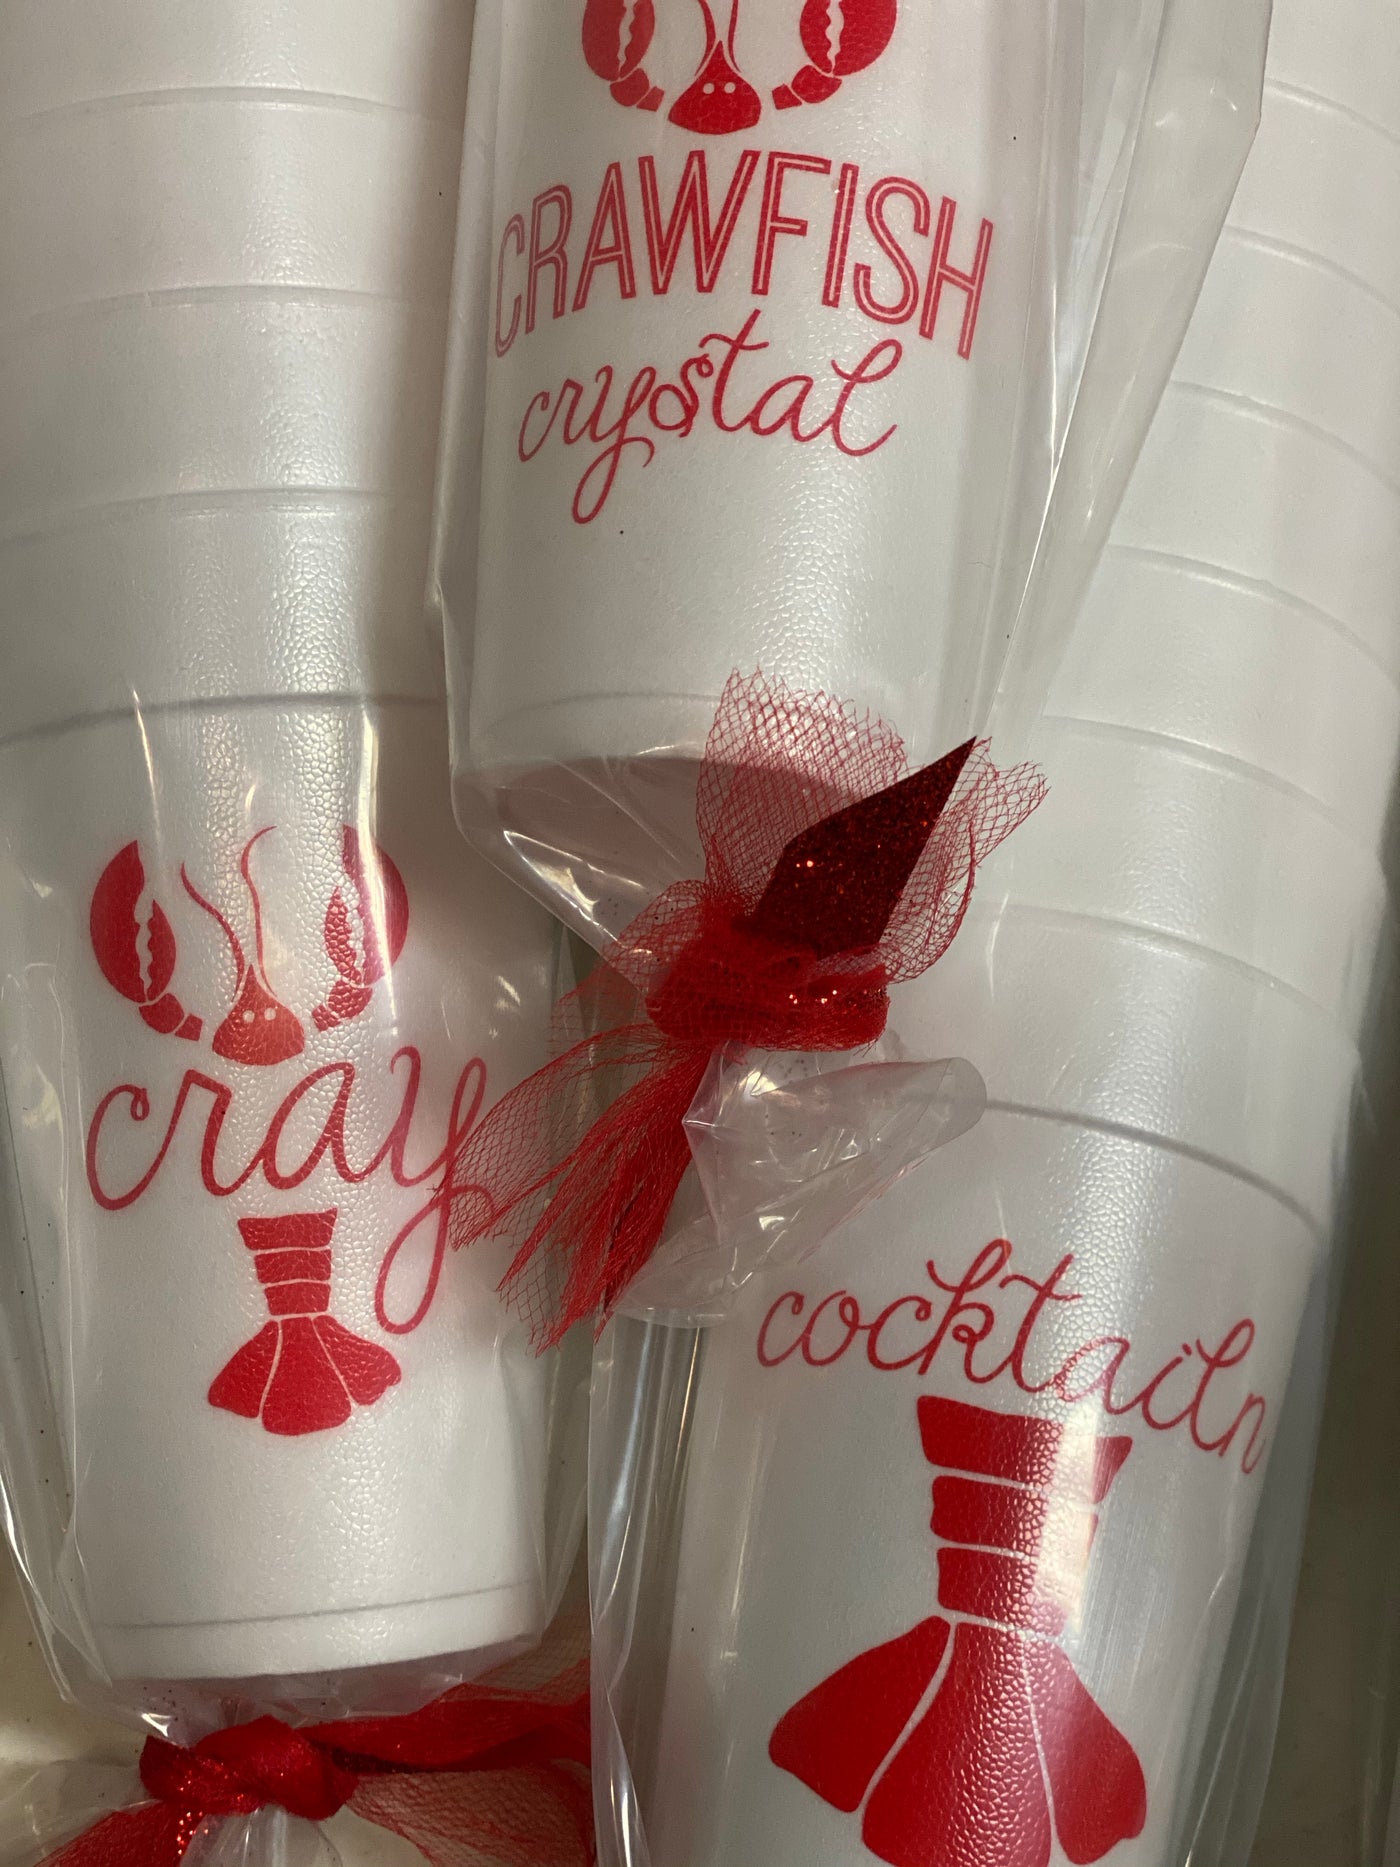 Crawfish Cups